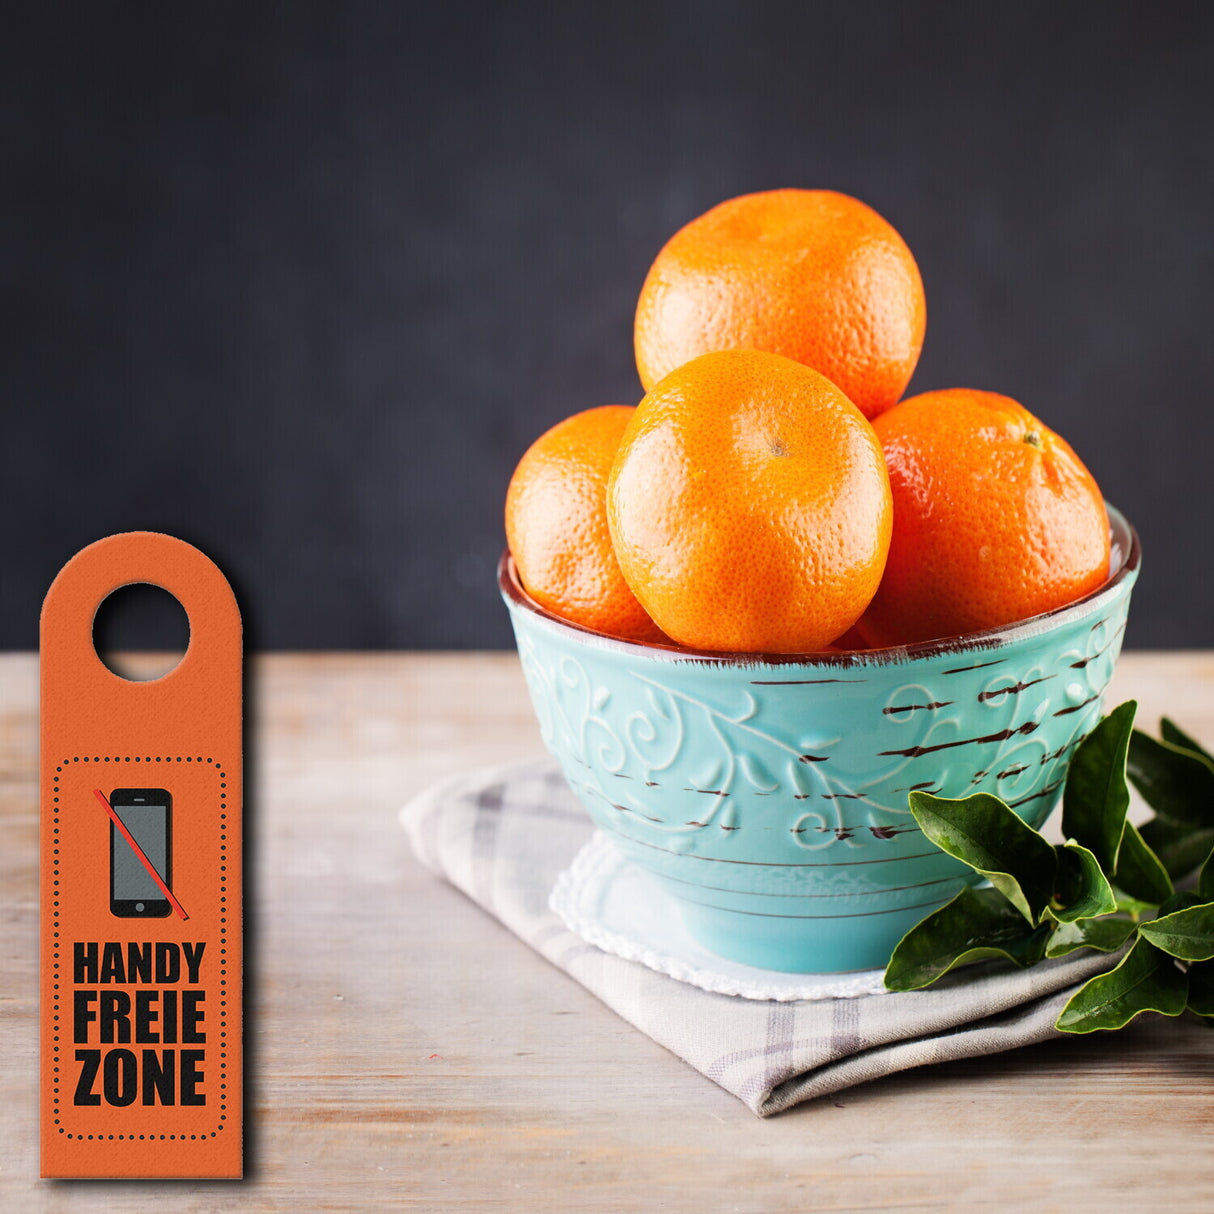 Handy freie Zone Türhänger in Orange